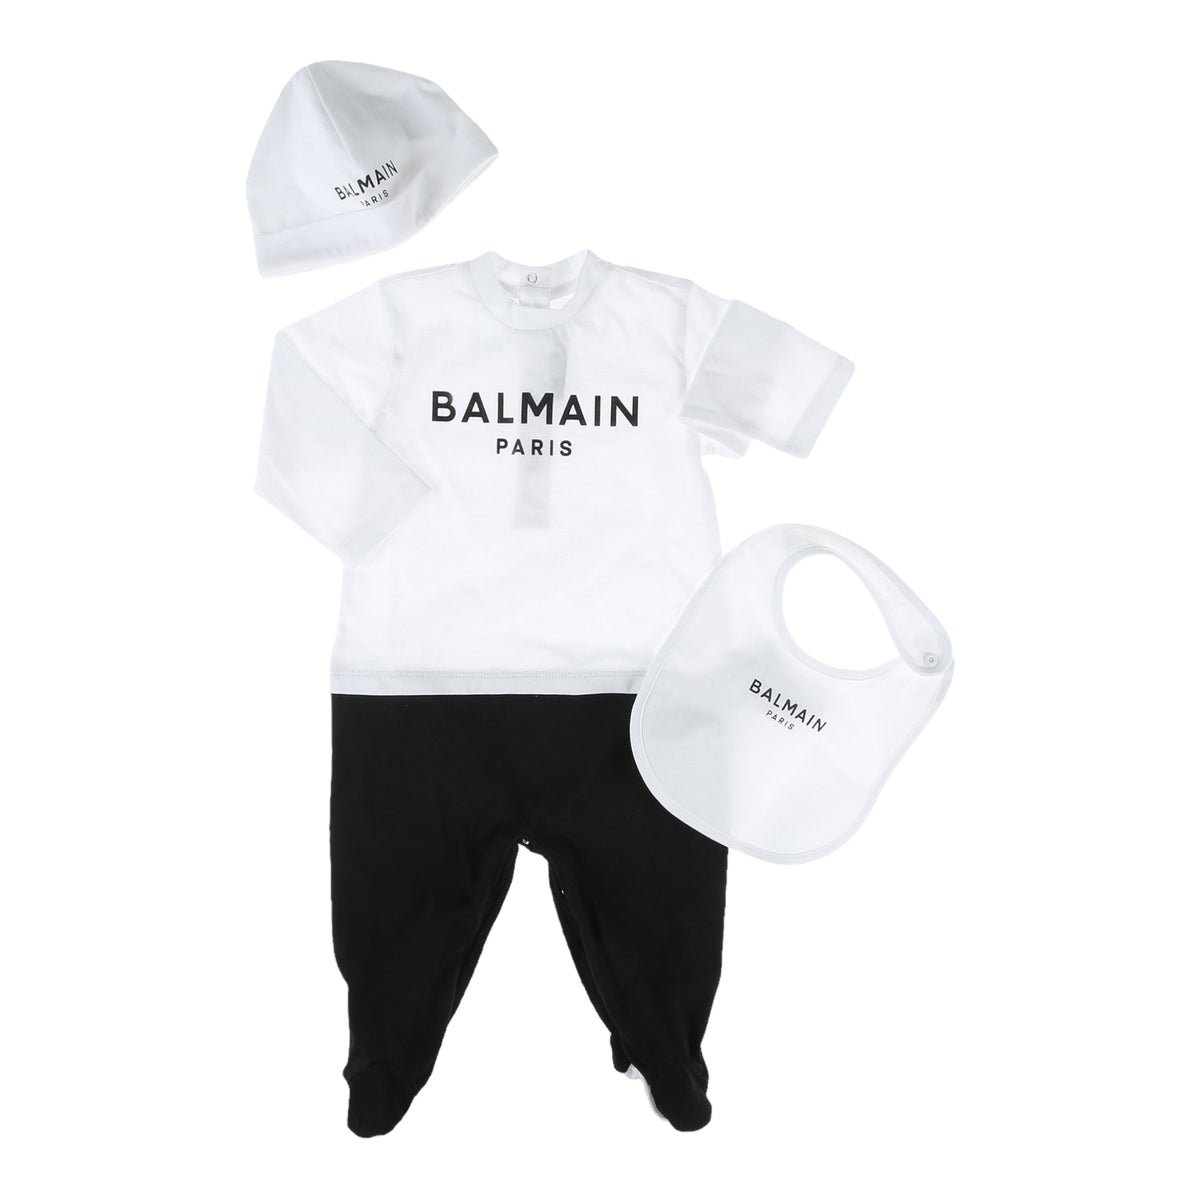 Balmain Kid's Infant Box Set